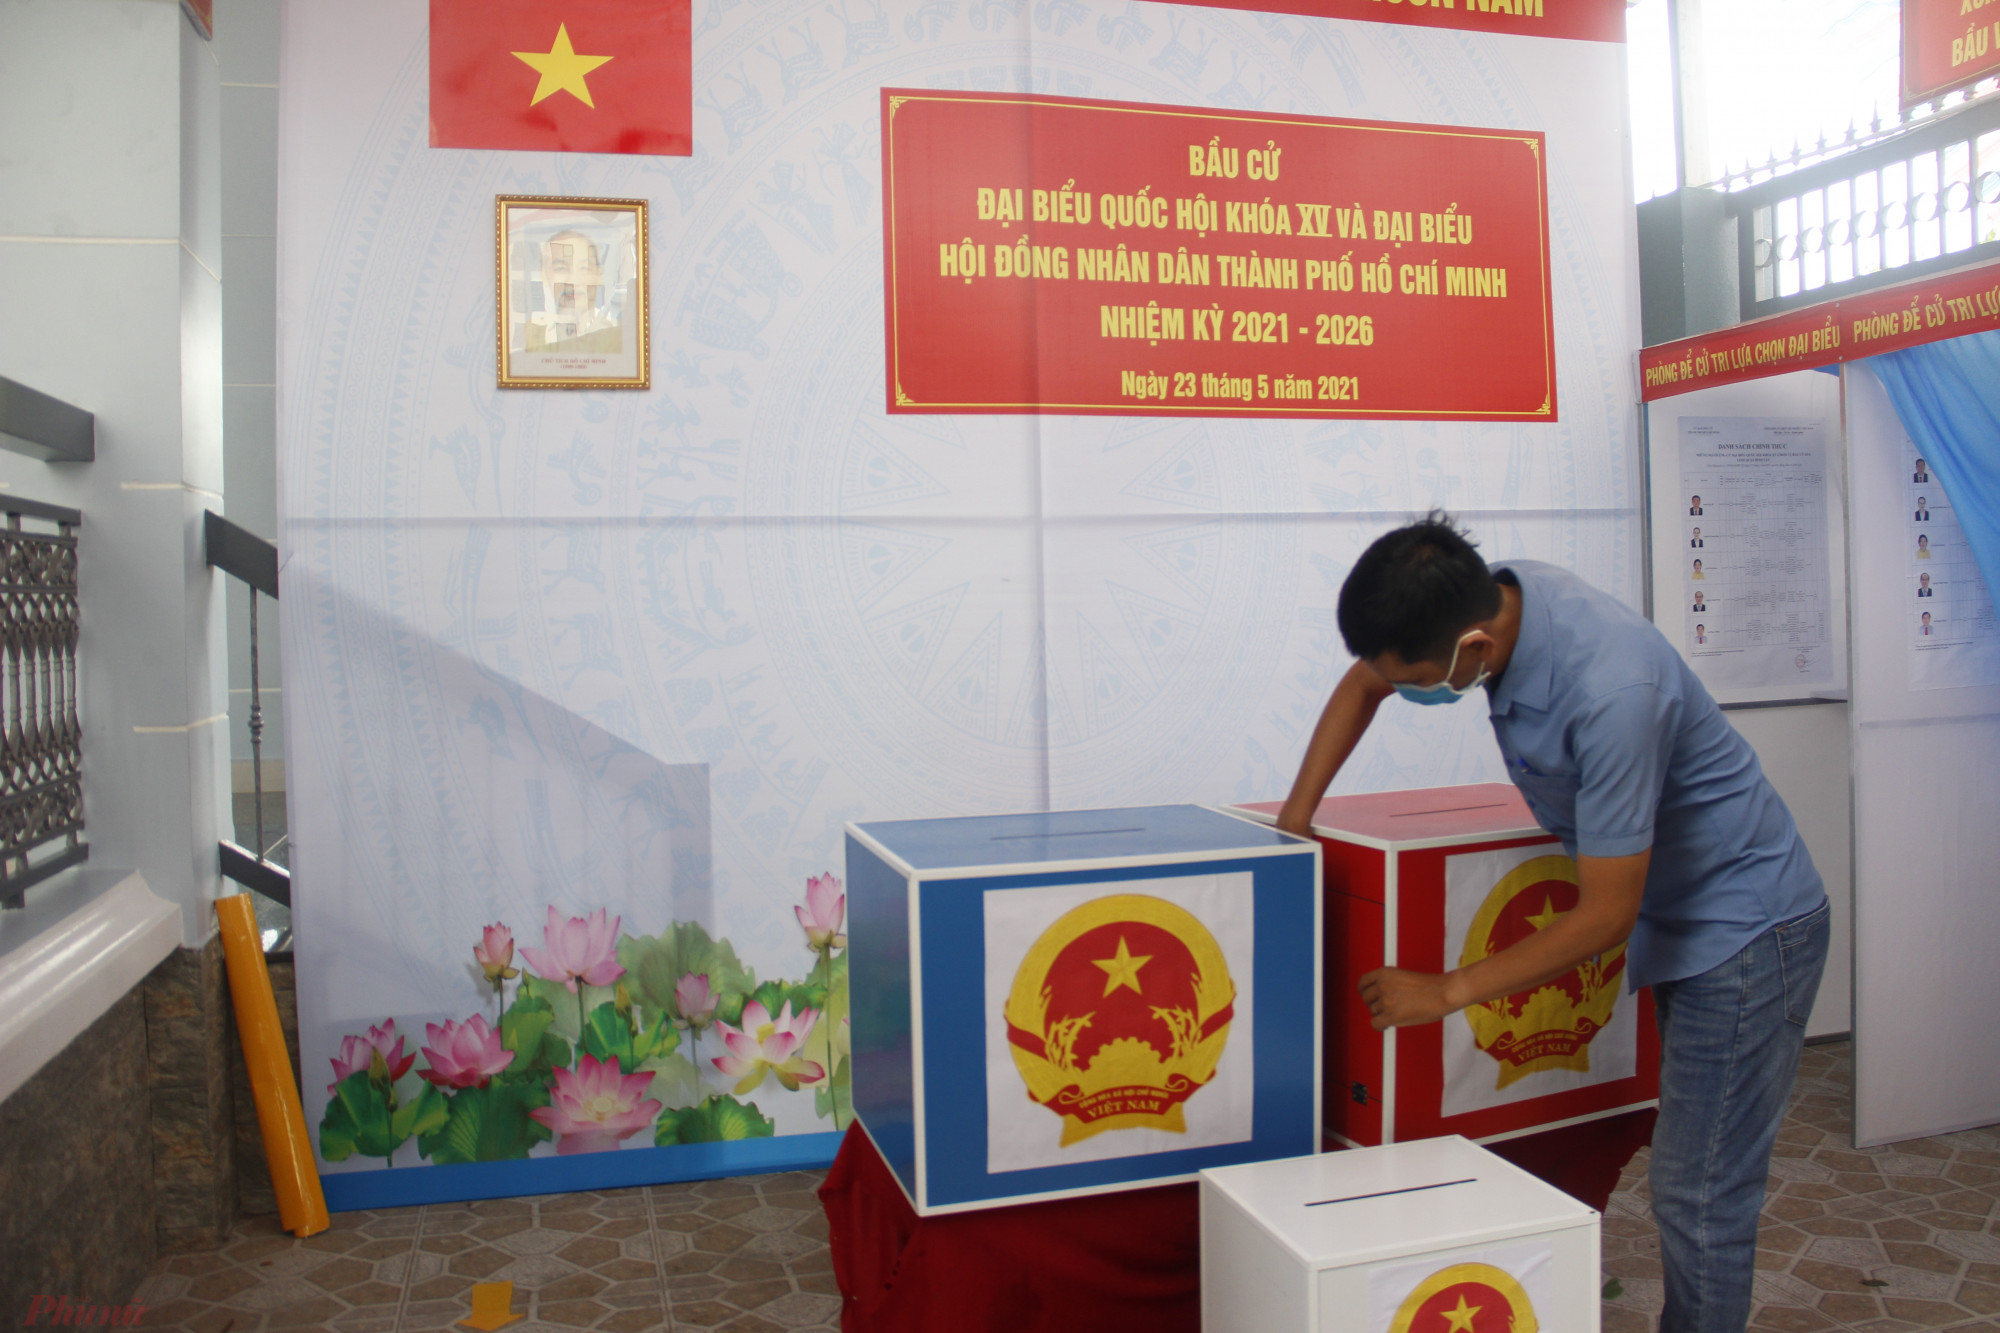 UBND quận Bình Tân cho biết, đến thời điểm hiện tại, công tác chuẩn bị cho bầu cử trên địa bàn đã cơ bản hoàn tất. Trong đó, các địa điểm bỏ phiếu là nhà dân đã được trang trí, thực hiện các biện pháp phòng chống dịch COVID-19.